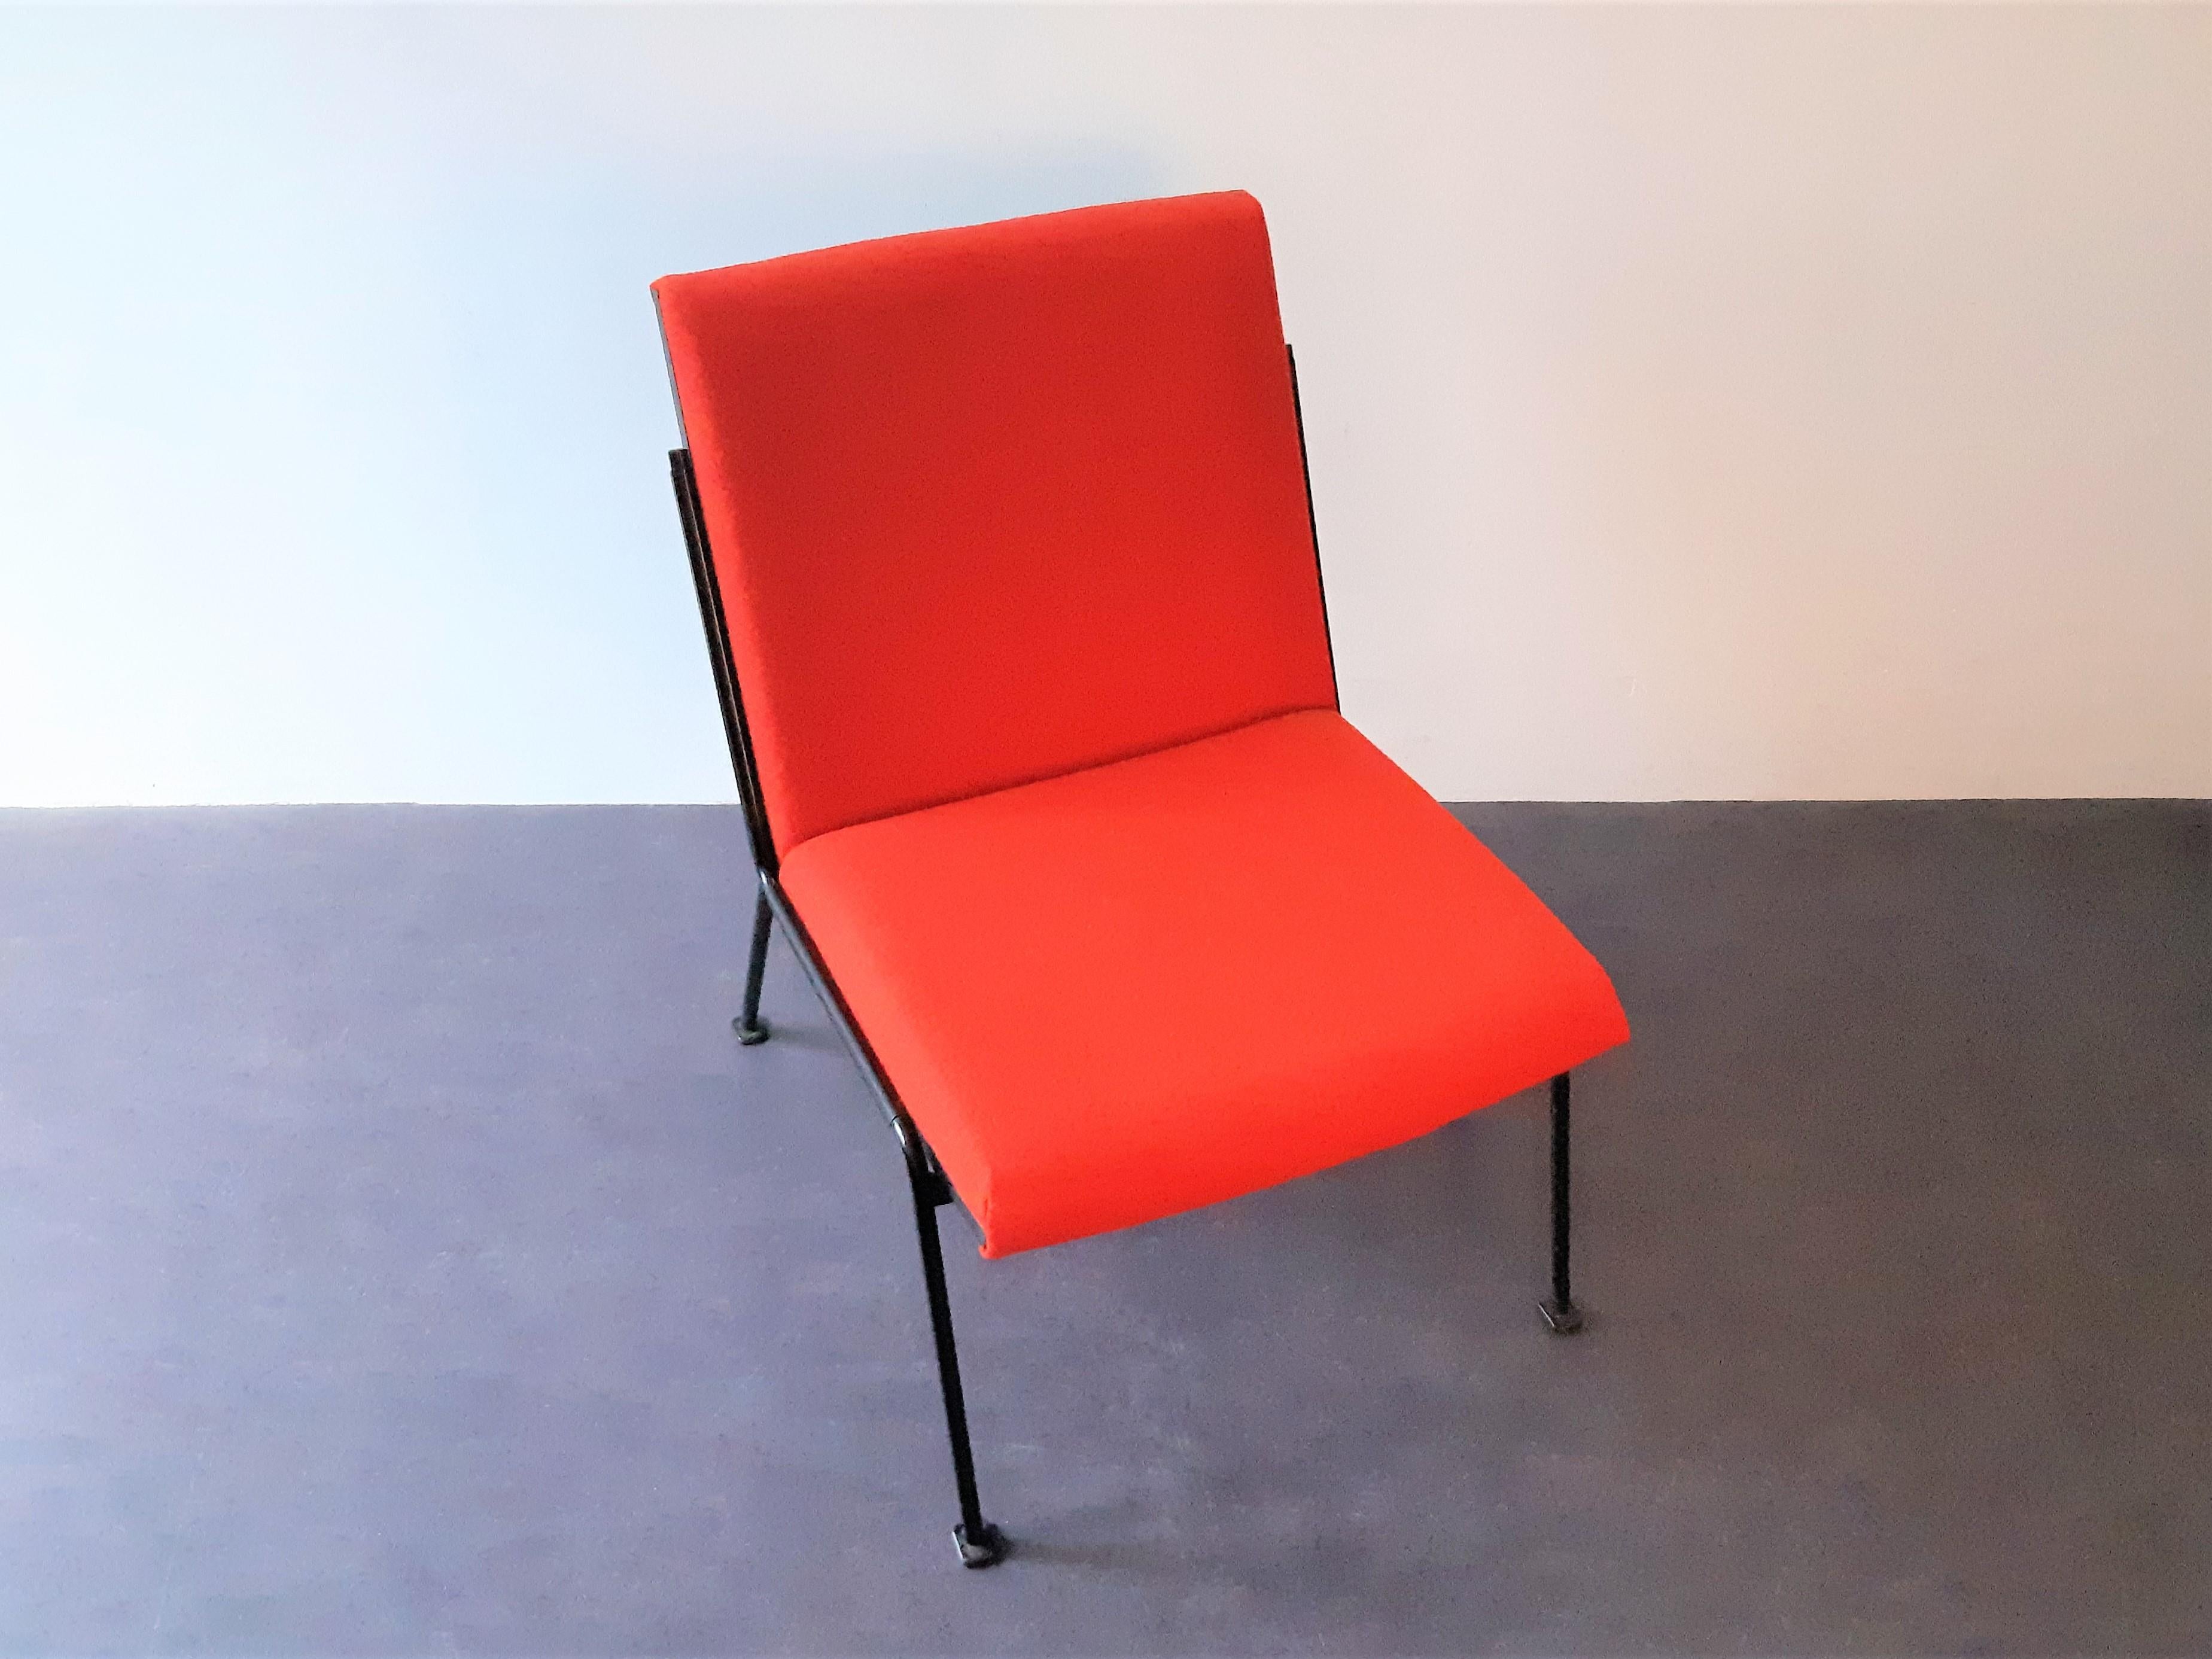 Der Oase-Sessel wurde 1958 von Wim Rietveld für Ahrend de Cirkel entworfen und 1959 mit dem Signe d'Or ausgezeichnet. Ein schönes Stück niederländisches Design! Dieser Stuhl ist neu gepolstert mit einem schönen roten Kvadrat-Stoff (Tonus 4, Farbe